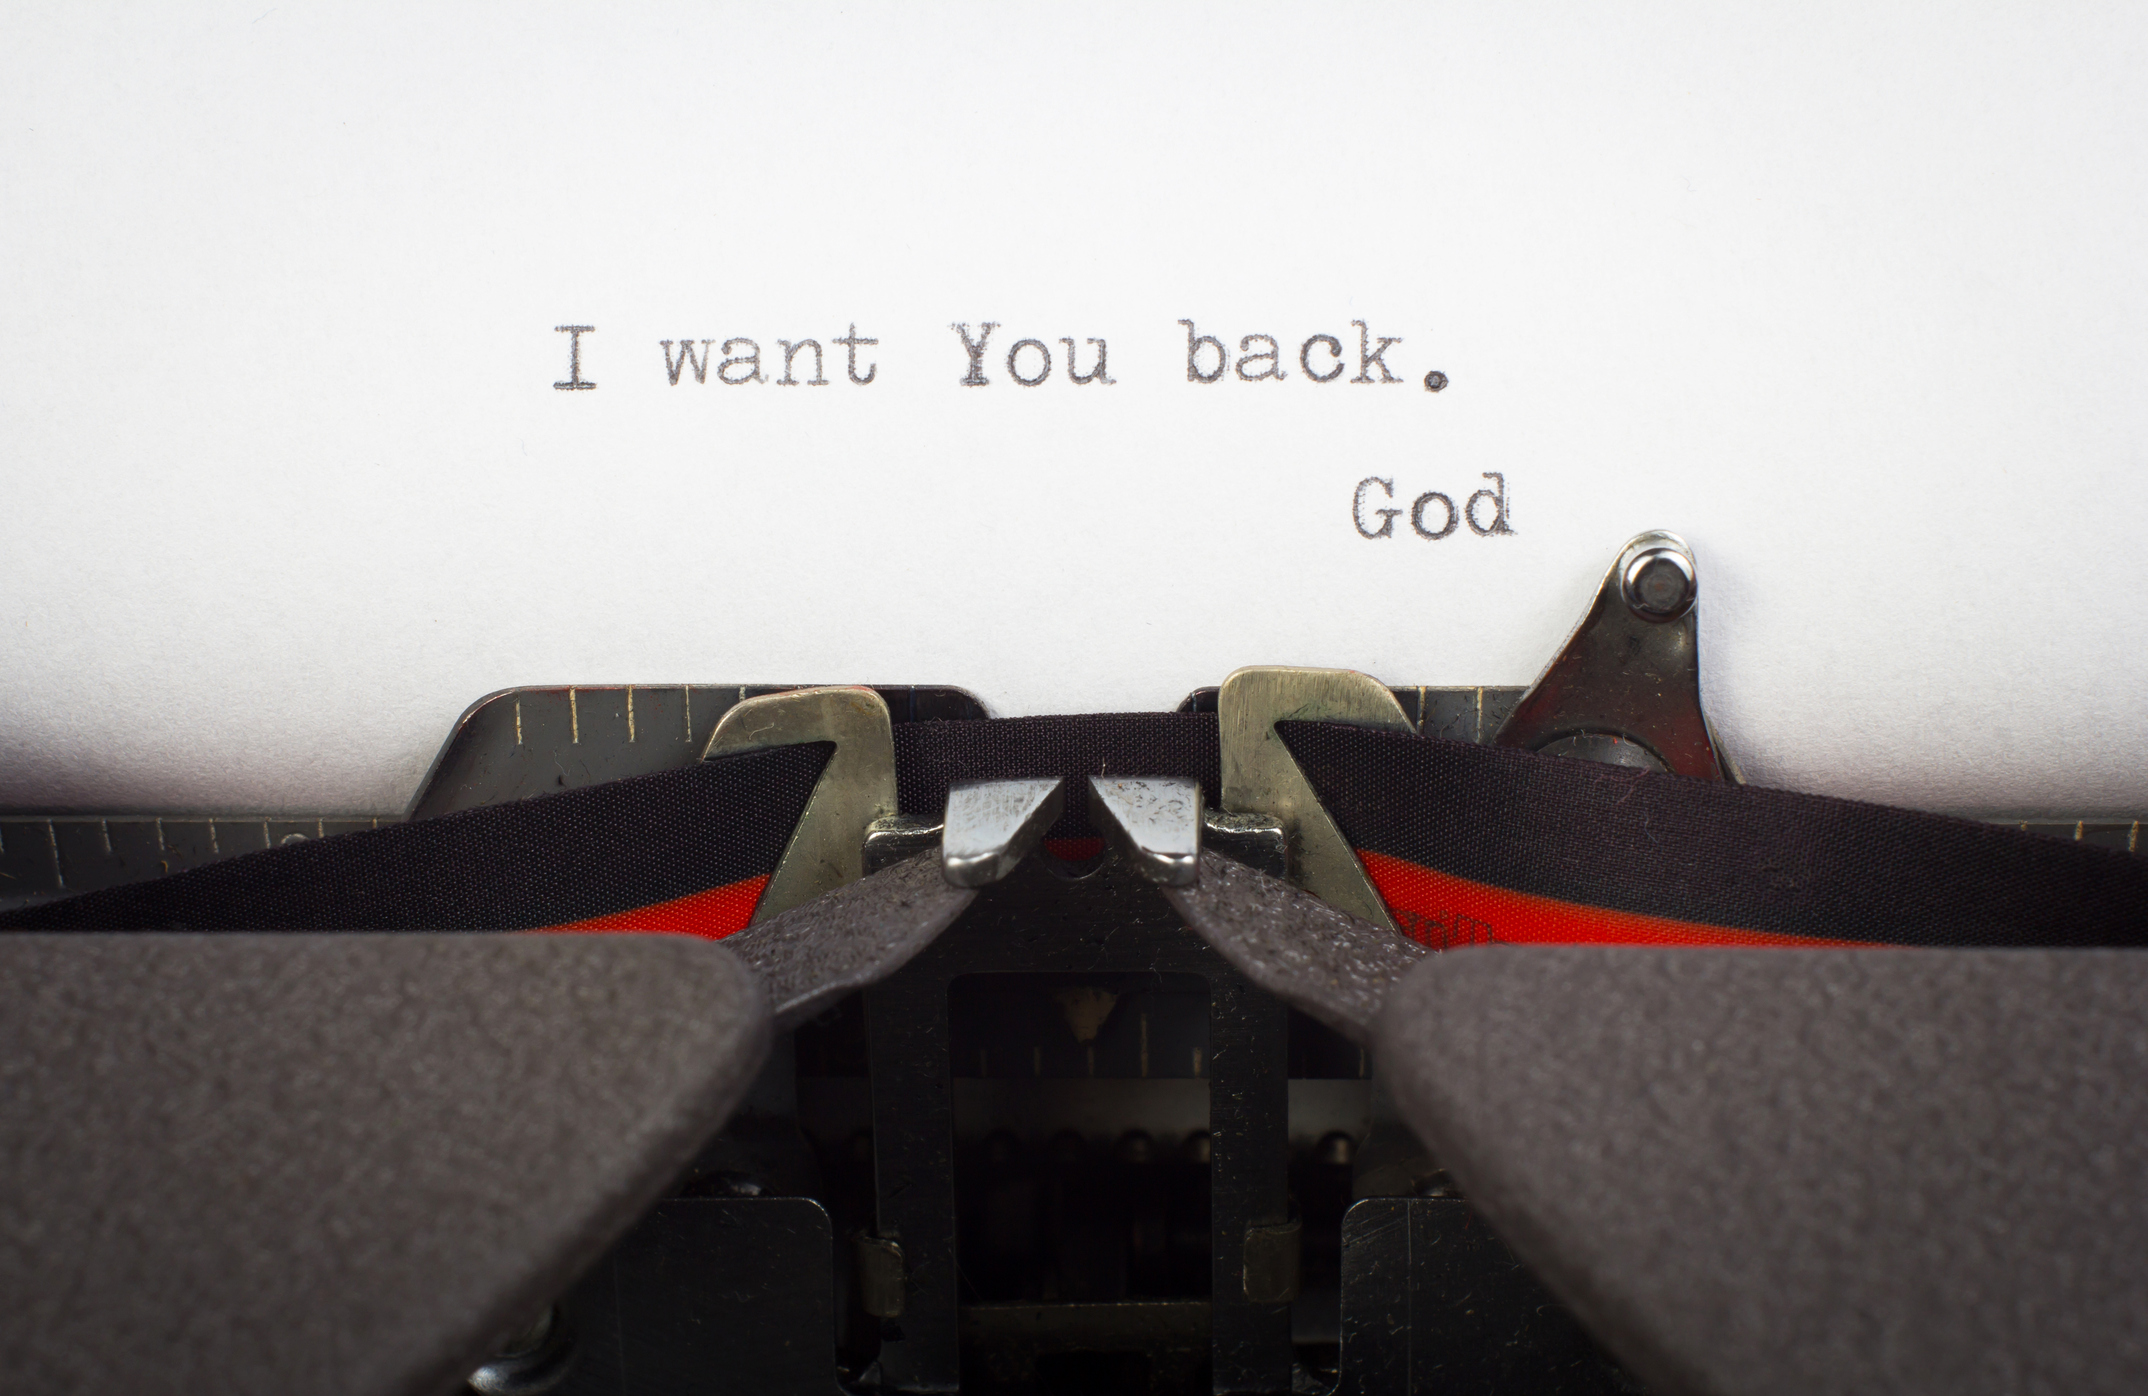 "I want You back" written on typewriter